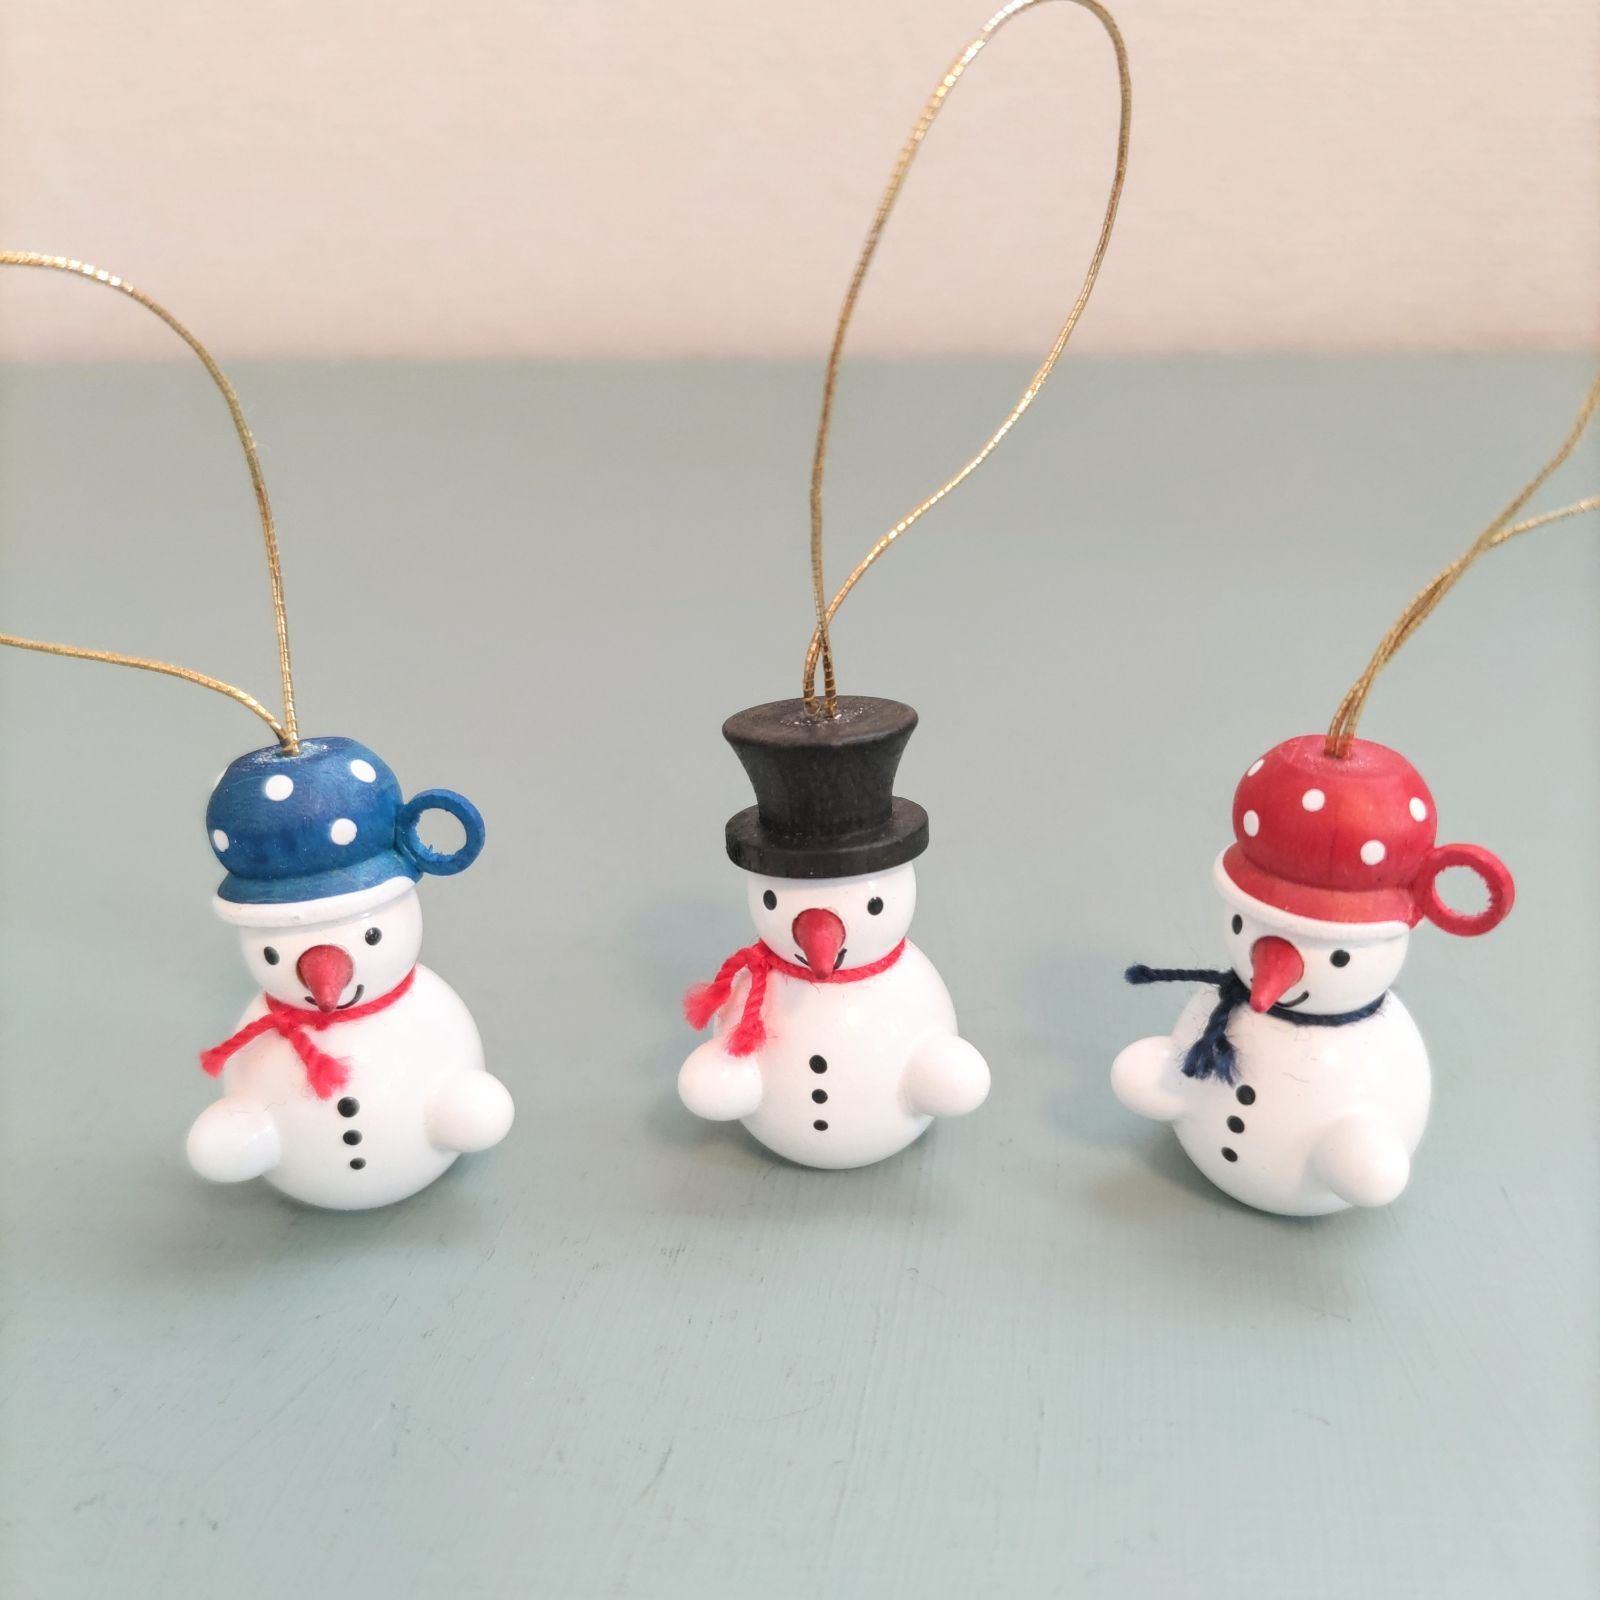 カップ帽とシルクハットスノーマン オーナメント ドイツ木工芸品 ドイツ雑貨 クリスマスツリー飾り 木製人形 木製雑貨 木製インテリア 雪だるま -  POLKA - メルカリ